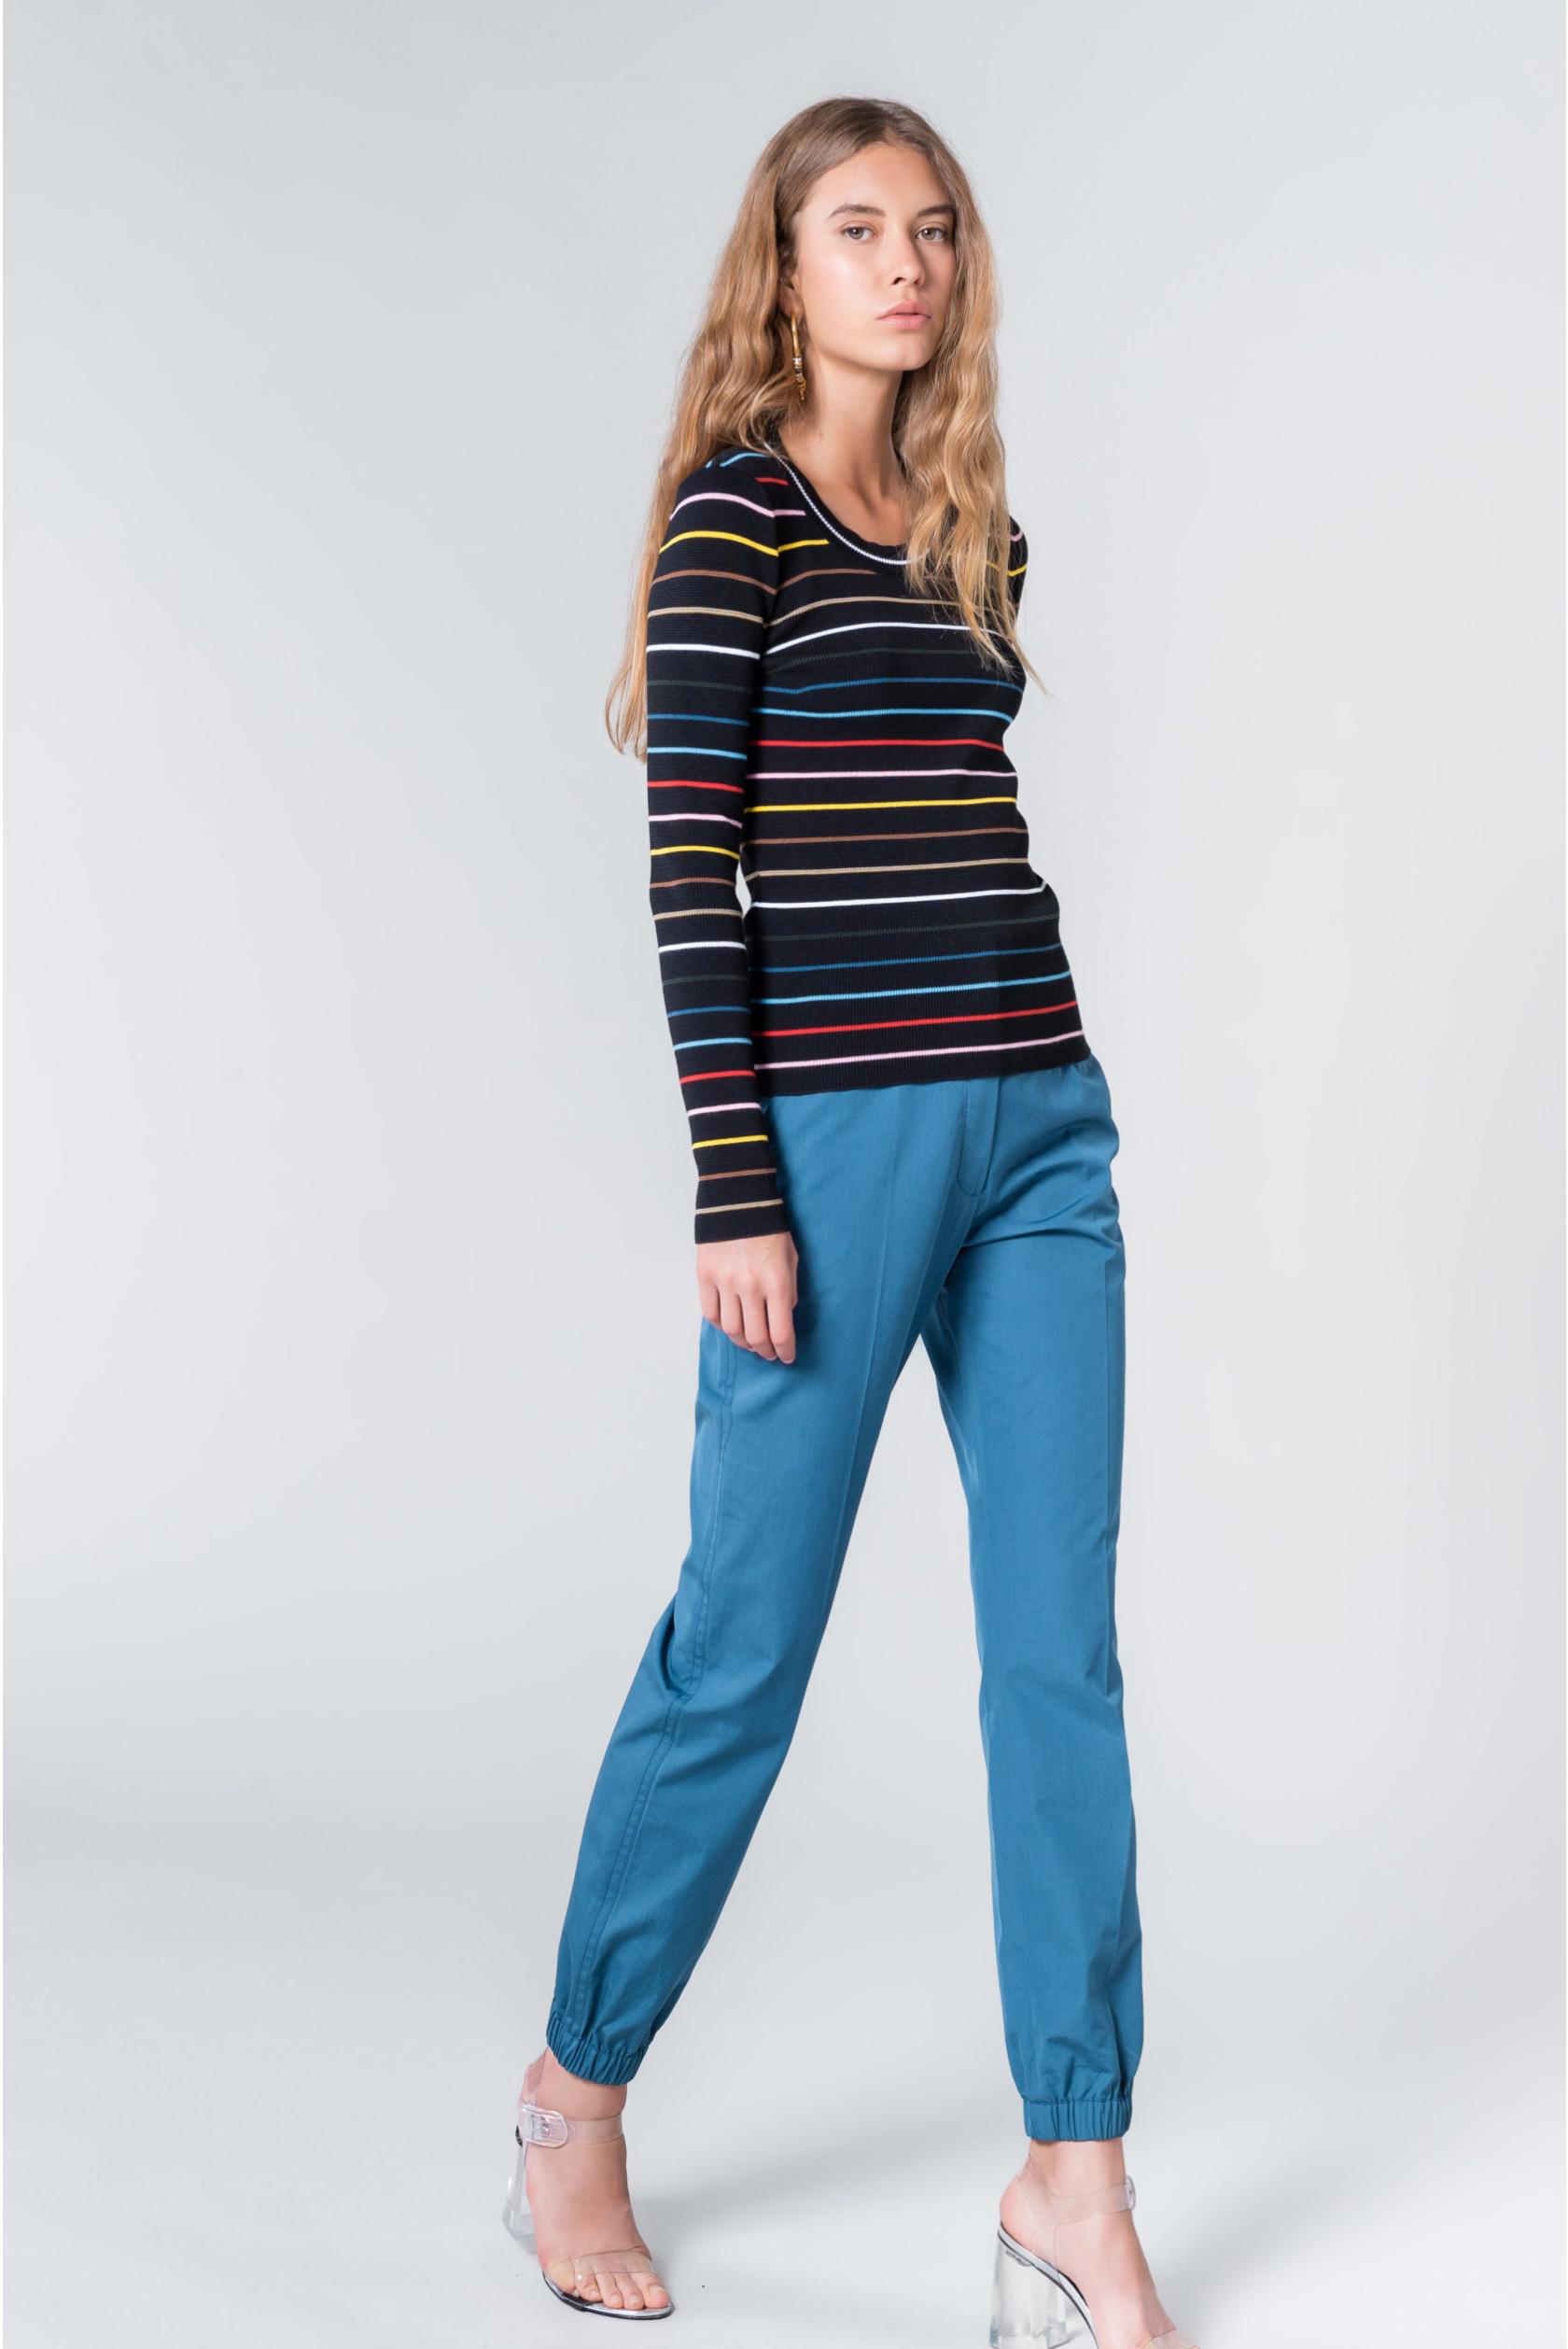 Sonia Rykiel Cotton Rykiel Stripes Knitted Jumper in Blue - Lyst